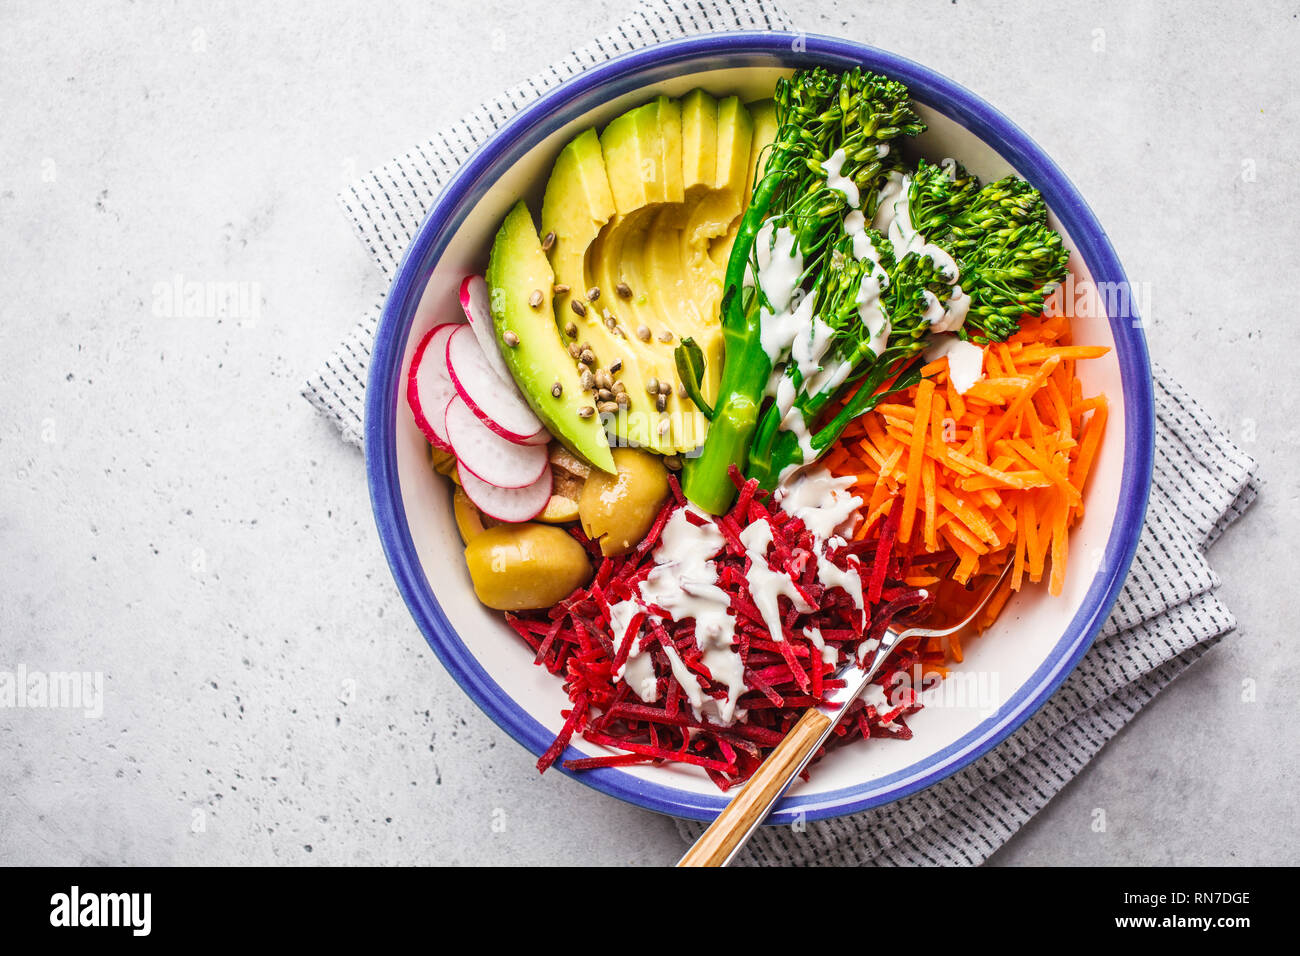 Rainbow vegane insalata con barbabietole, carote, avocado, broccolini, olive e tahini spogliatoio, vista dall'alto. Foto Stock